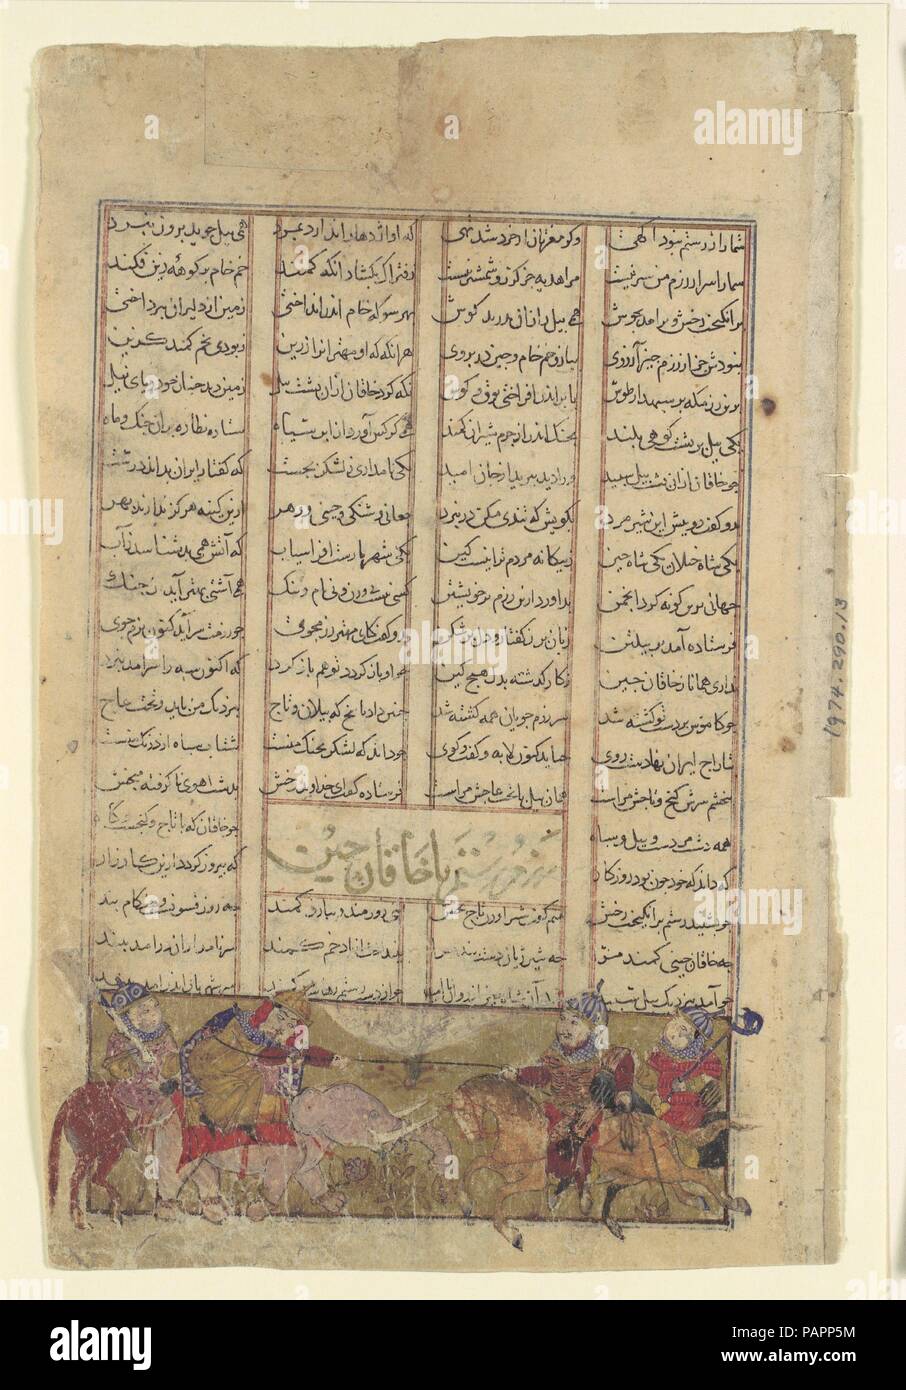 "Rustam Lazzi il Khaqan di Chin, tirando lui dal suo elefante bianco', Folio da un Shahnama (Libro dei Re). Autore: Abu'l Qasim Firdausi (935-1020). Dimensioni: Pagina: 8 1/16 x 5 1/4 in. (20,5 x 13,3 cm) Pittura: 1 7/16 x 4 3/16 in. (3,7 x 10,6 cm). Data: ca. 1330-40. Il Khaqan (khan) del mento (Cina) diventare un alleato del Turanians e di fronte agli iraniani con un grande esercito, compresi molti sontuosamente adornati elefanti di guerra. Rustam, nonostante le enormi disparità, è stata determinata per catturare il khan e prendere il bottino al iraniano shah, Kai Khusrau. Rustam caricata attraverso una raffica di missili Foto Stock